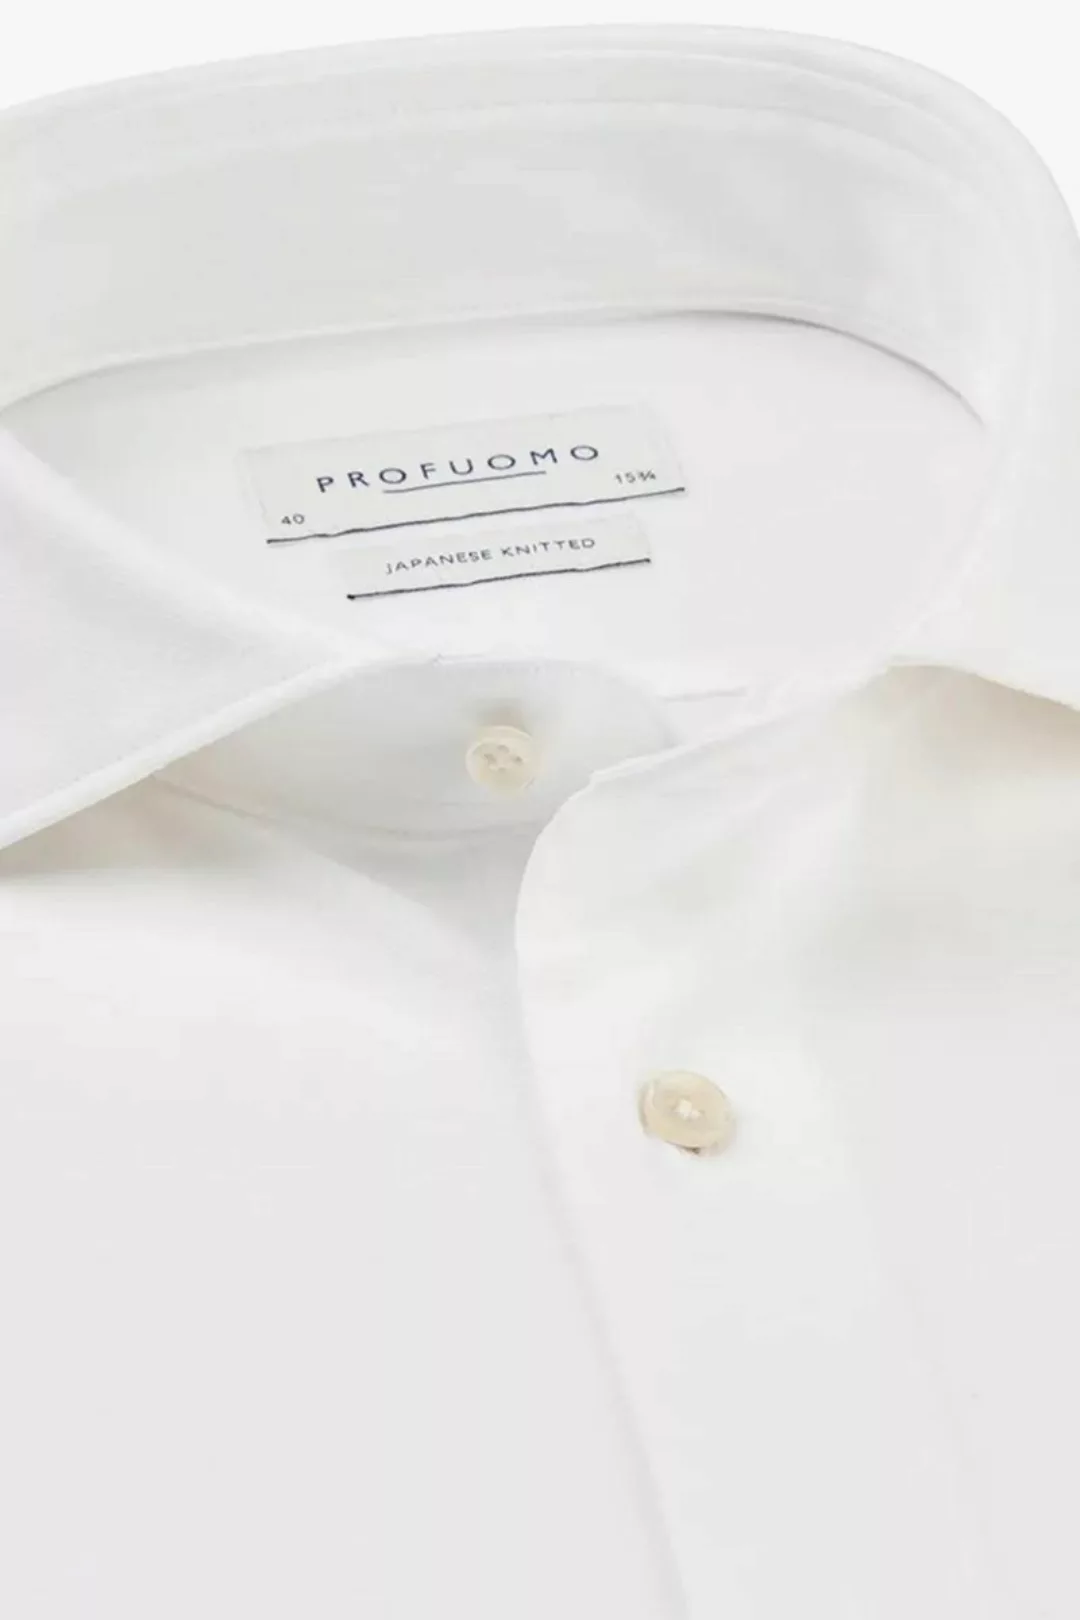 Profuomo Hemd Japanese Knitted Weiß - Größe 43 günstig online kaufen